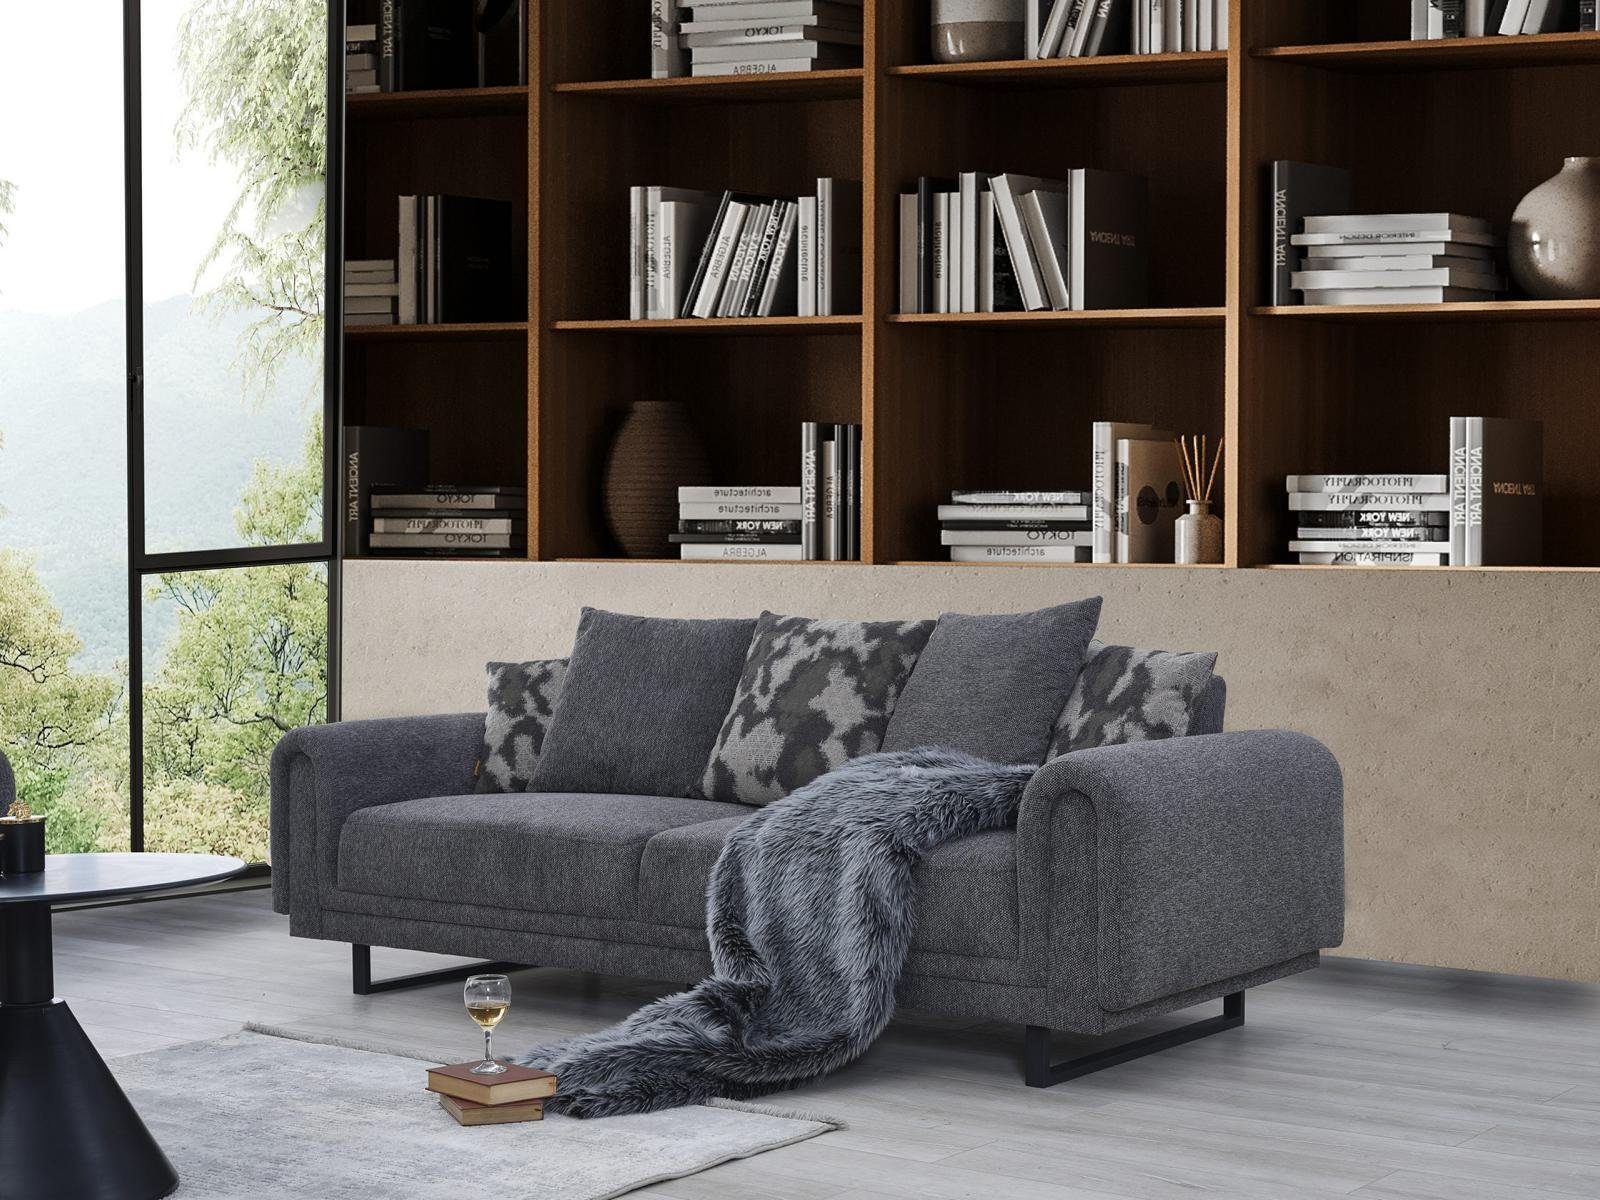 JVmoebel Sofa Luxus Wohnzimmer Sofa Dreisitzer Couch Modern Luxus Polstermöbel, 1 Teile, Made in Europa